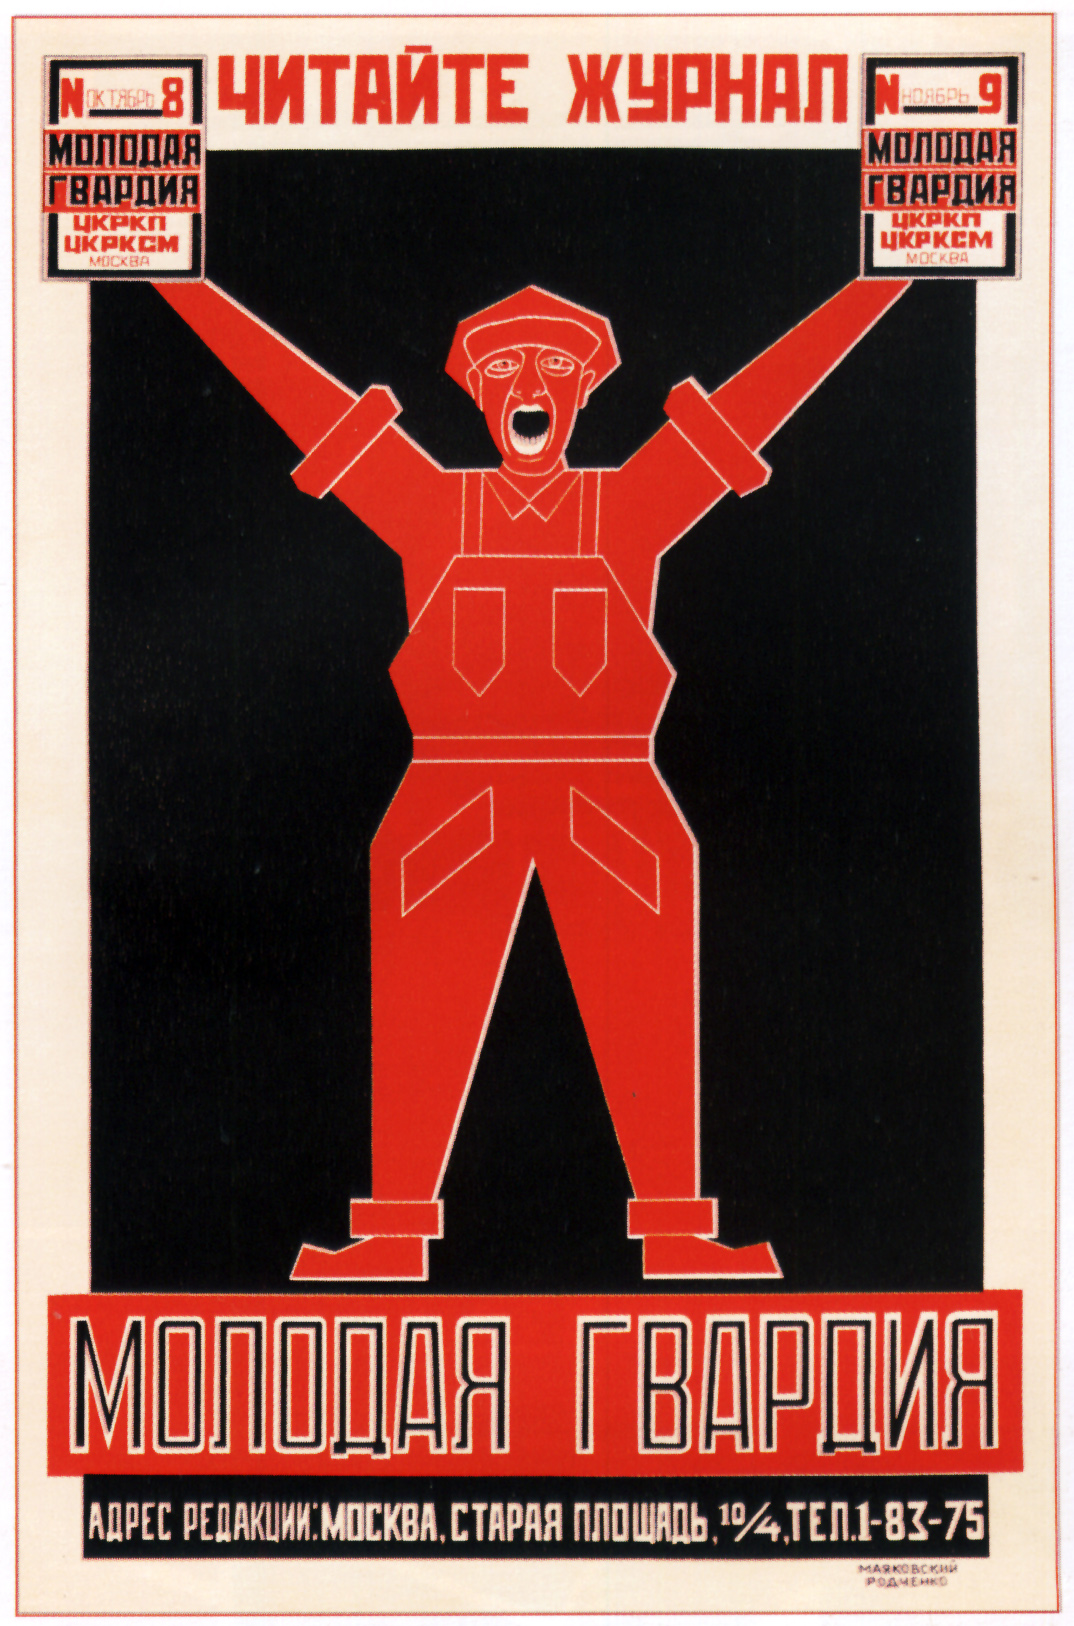  Molodaya Gvardiya dergisi için hazırlanan poster, Alexander Rodchenko,1924